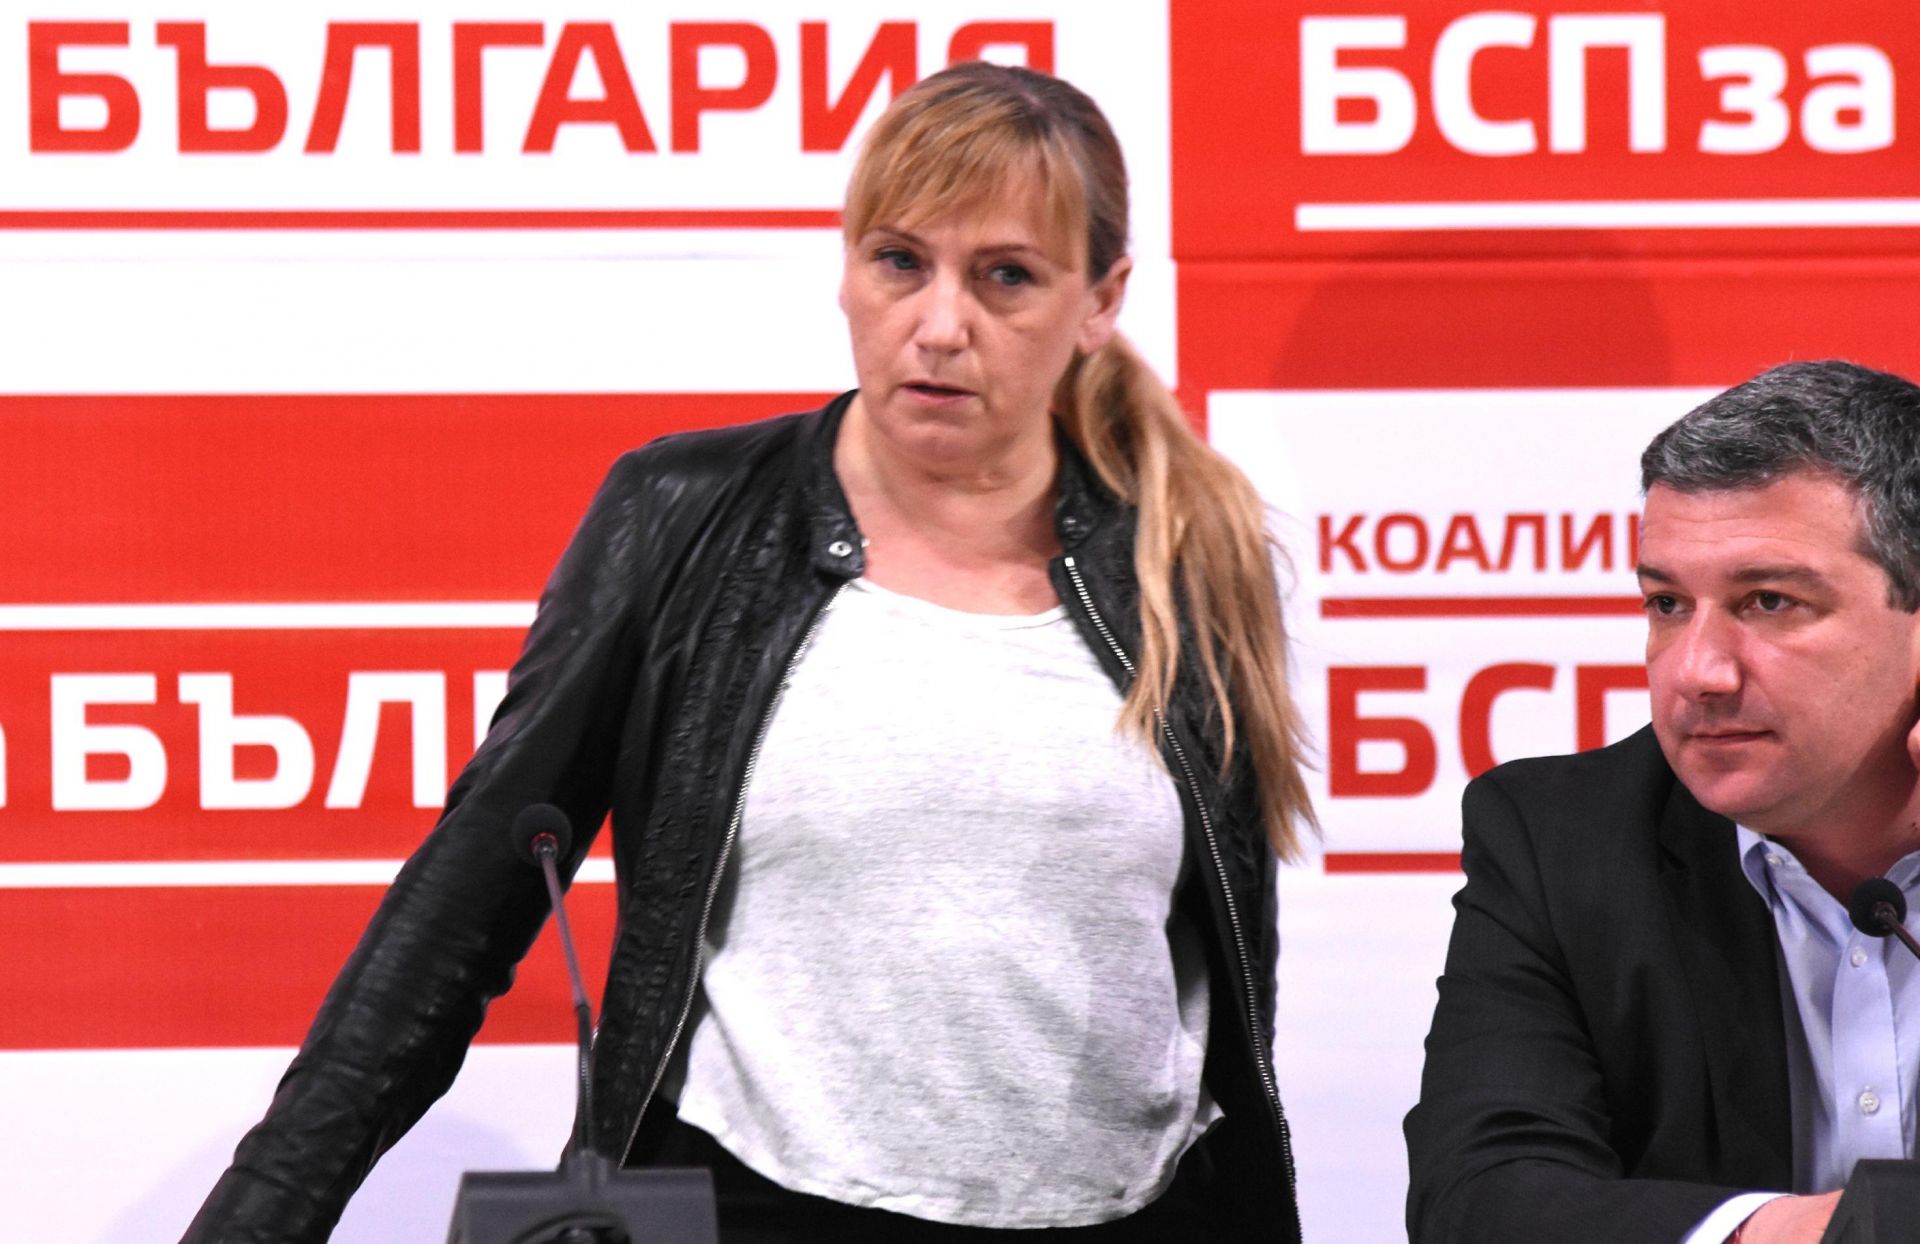  Обявяването на обвинението от прокуратурата дойде във времето, когато Борисов каза, че опозицията избива зъбите на ГЕРБ, заяви Елена Йончева